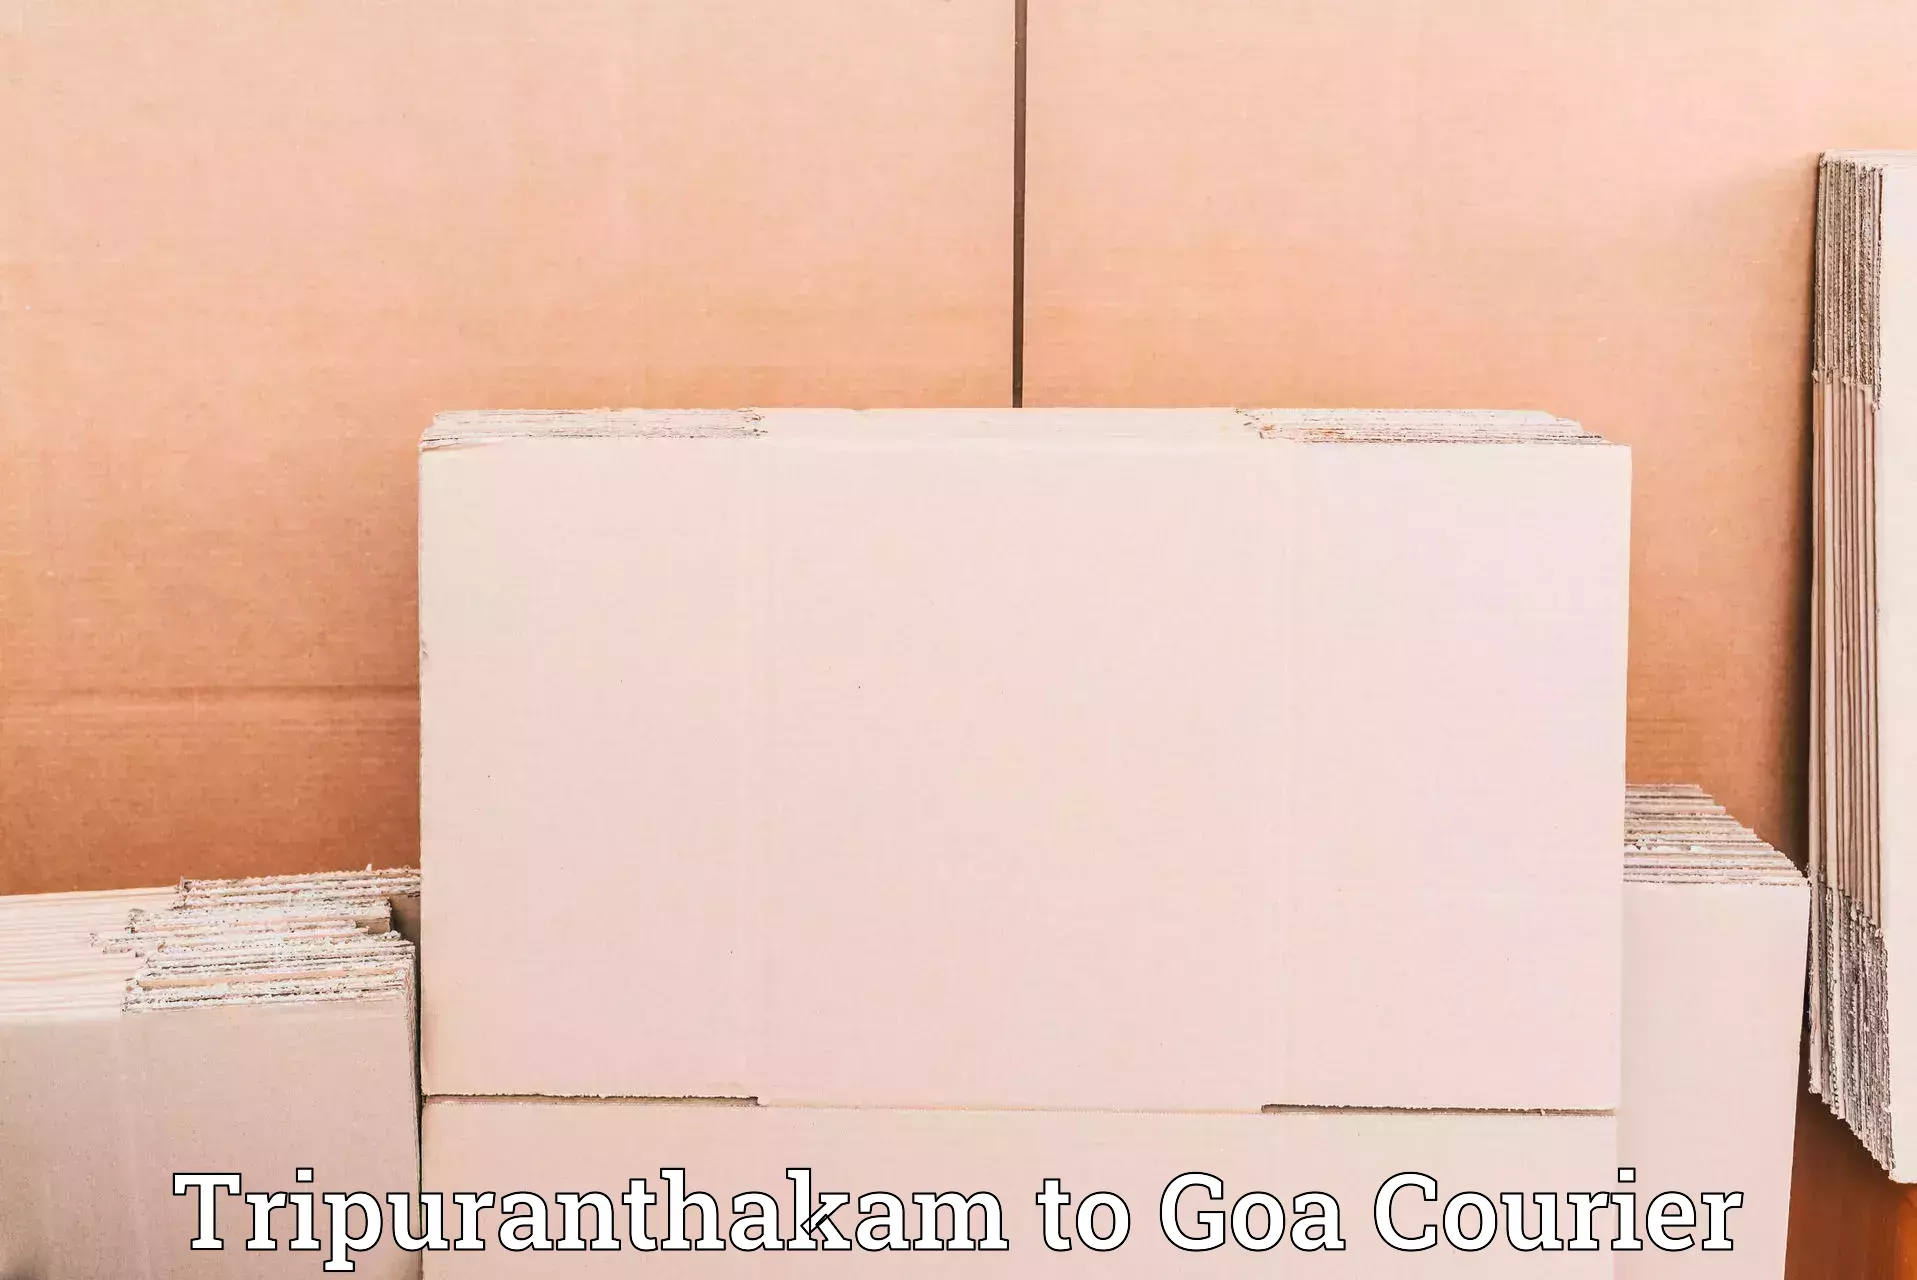 Customer-focused courier Tripuranthakam to Goa University